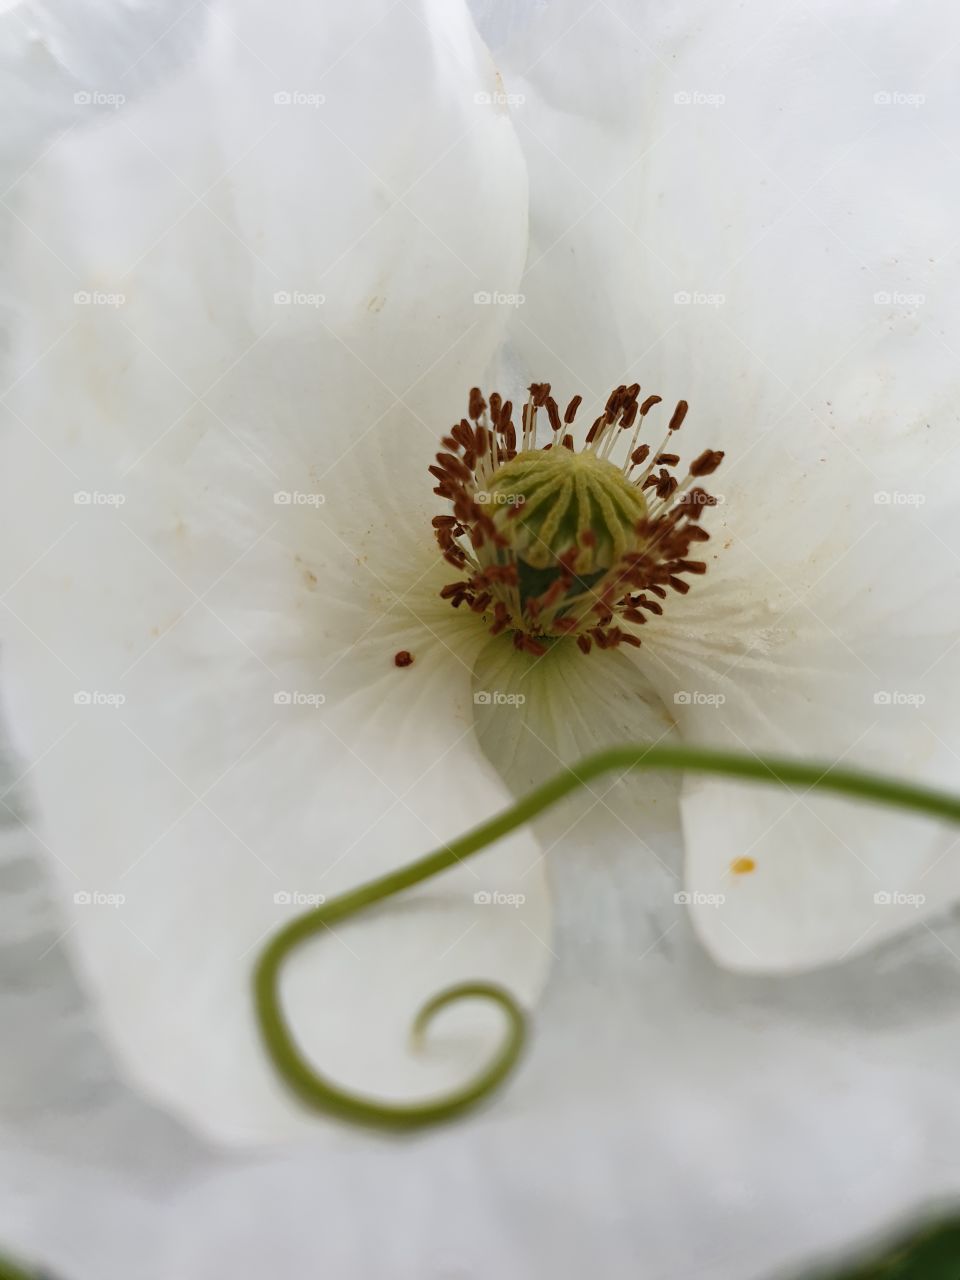 A white poppy in closeup.